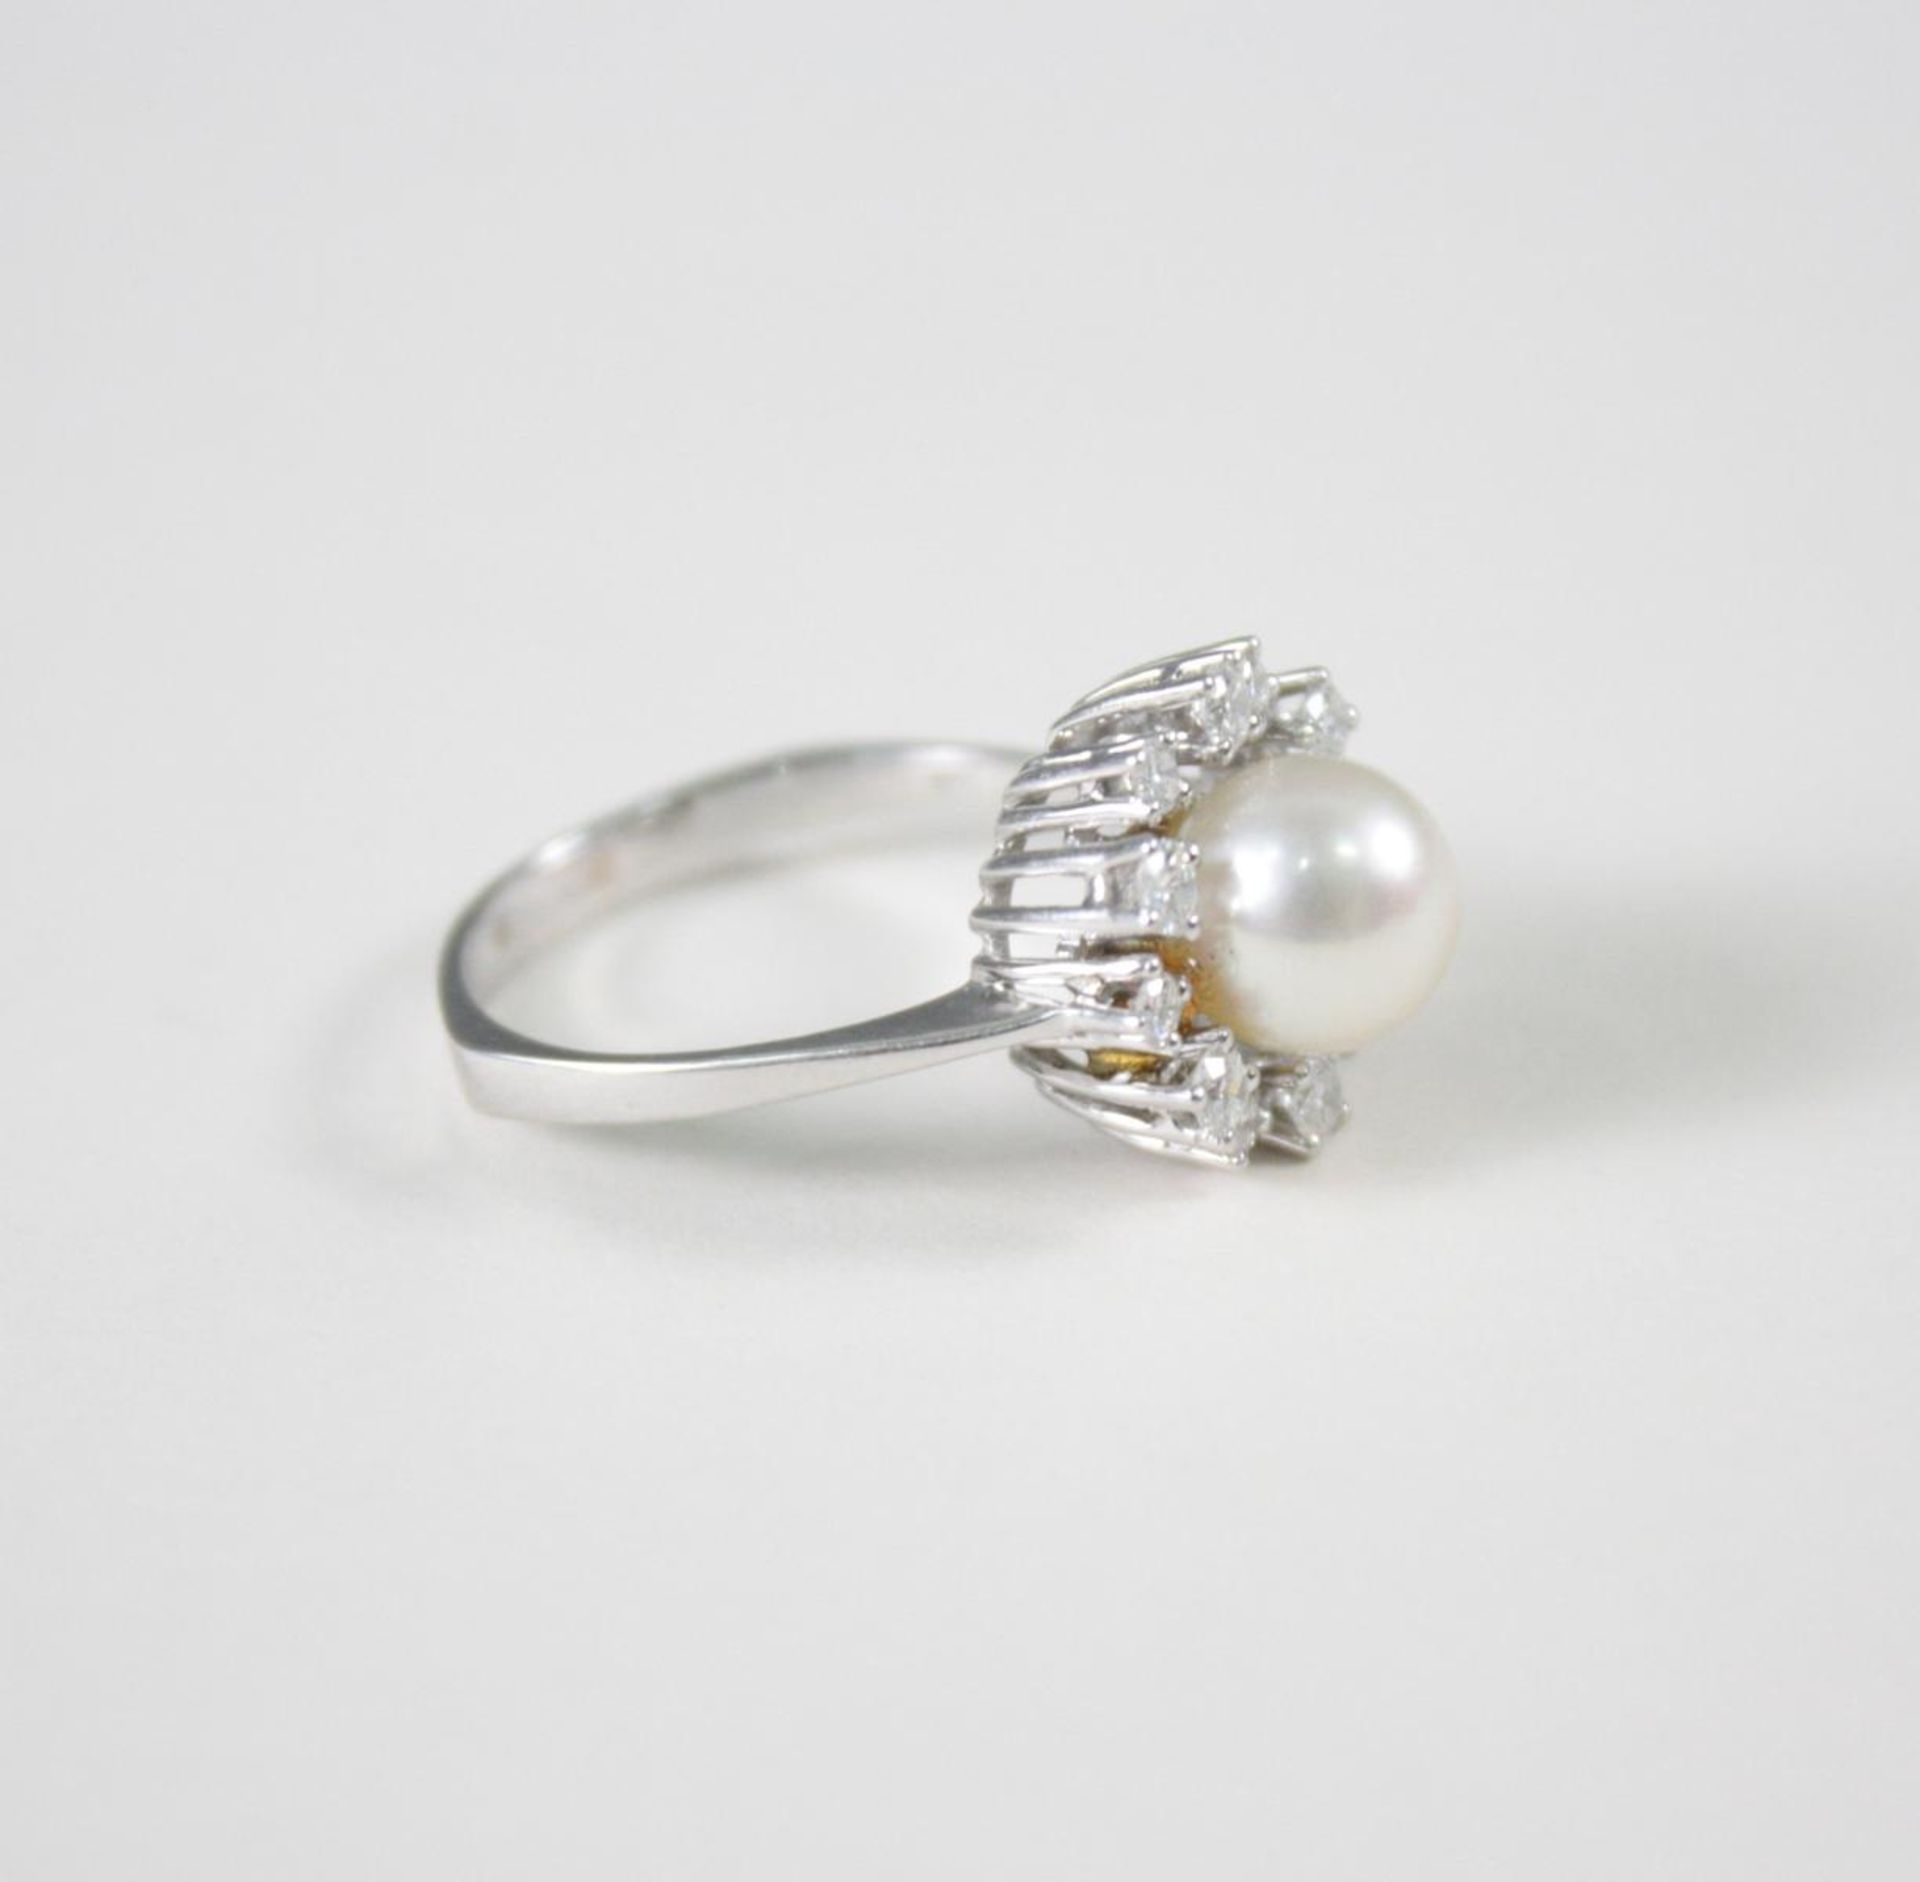 Damenring mit Perle und Diamanten, 14 Karat Weißgold1 Perle Durchmesser 0,79 cm, 12 Diamanten von - Bild 2 aus 3